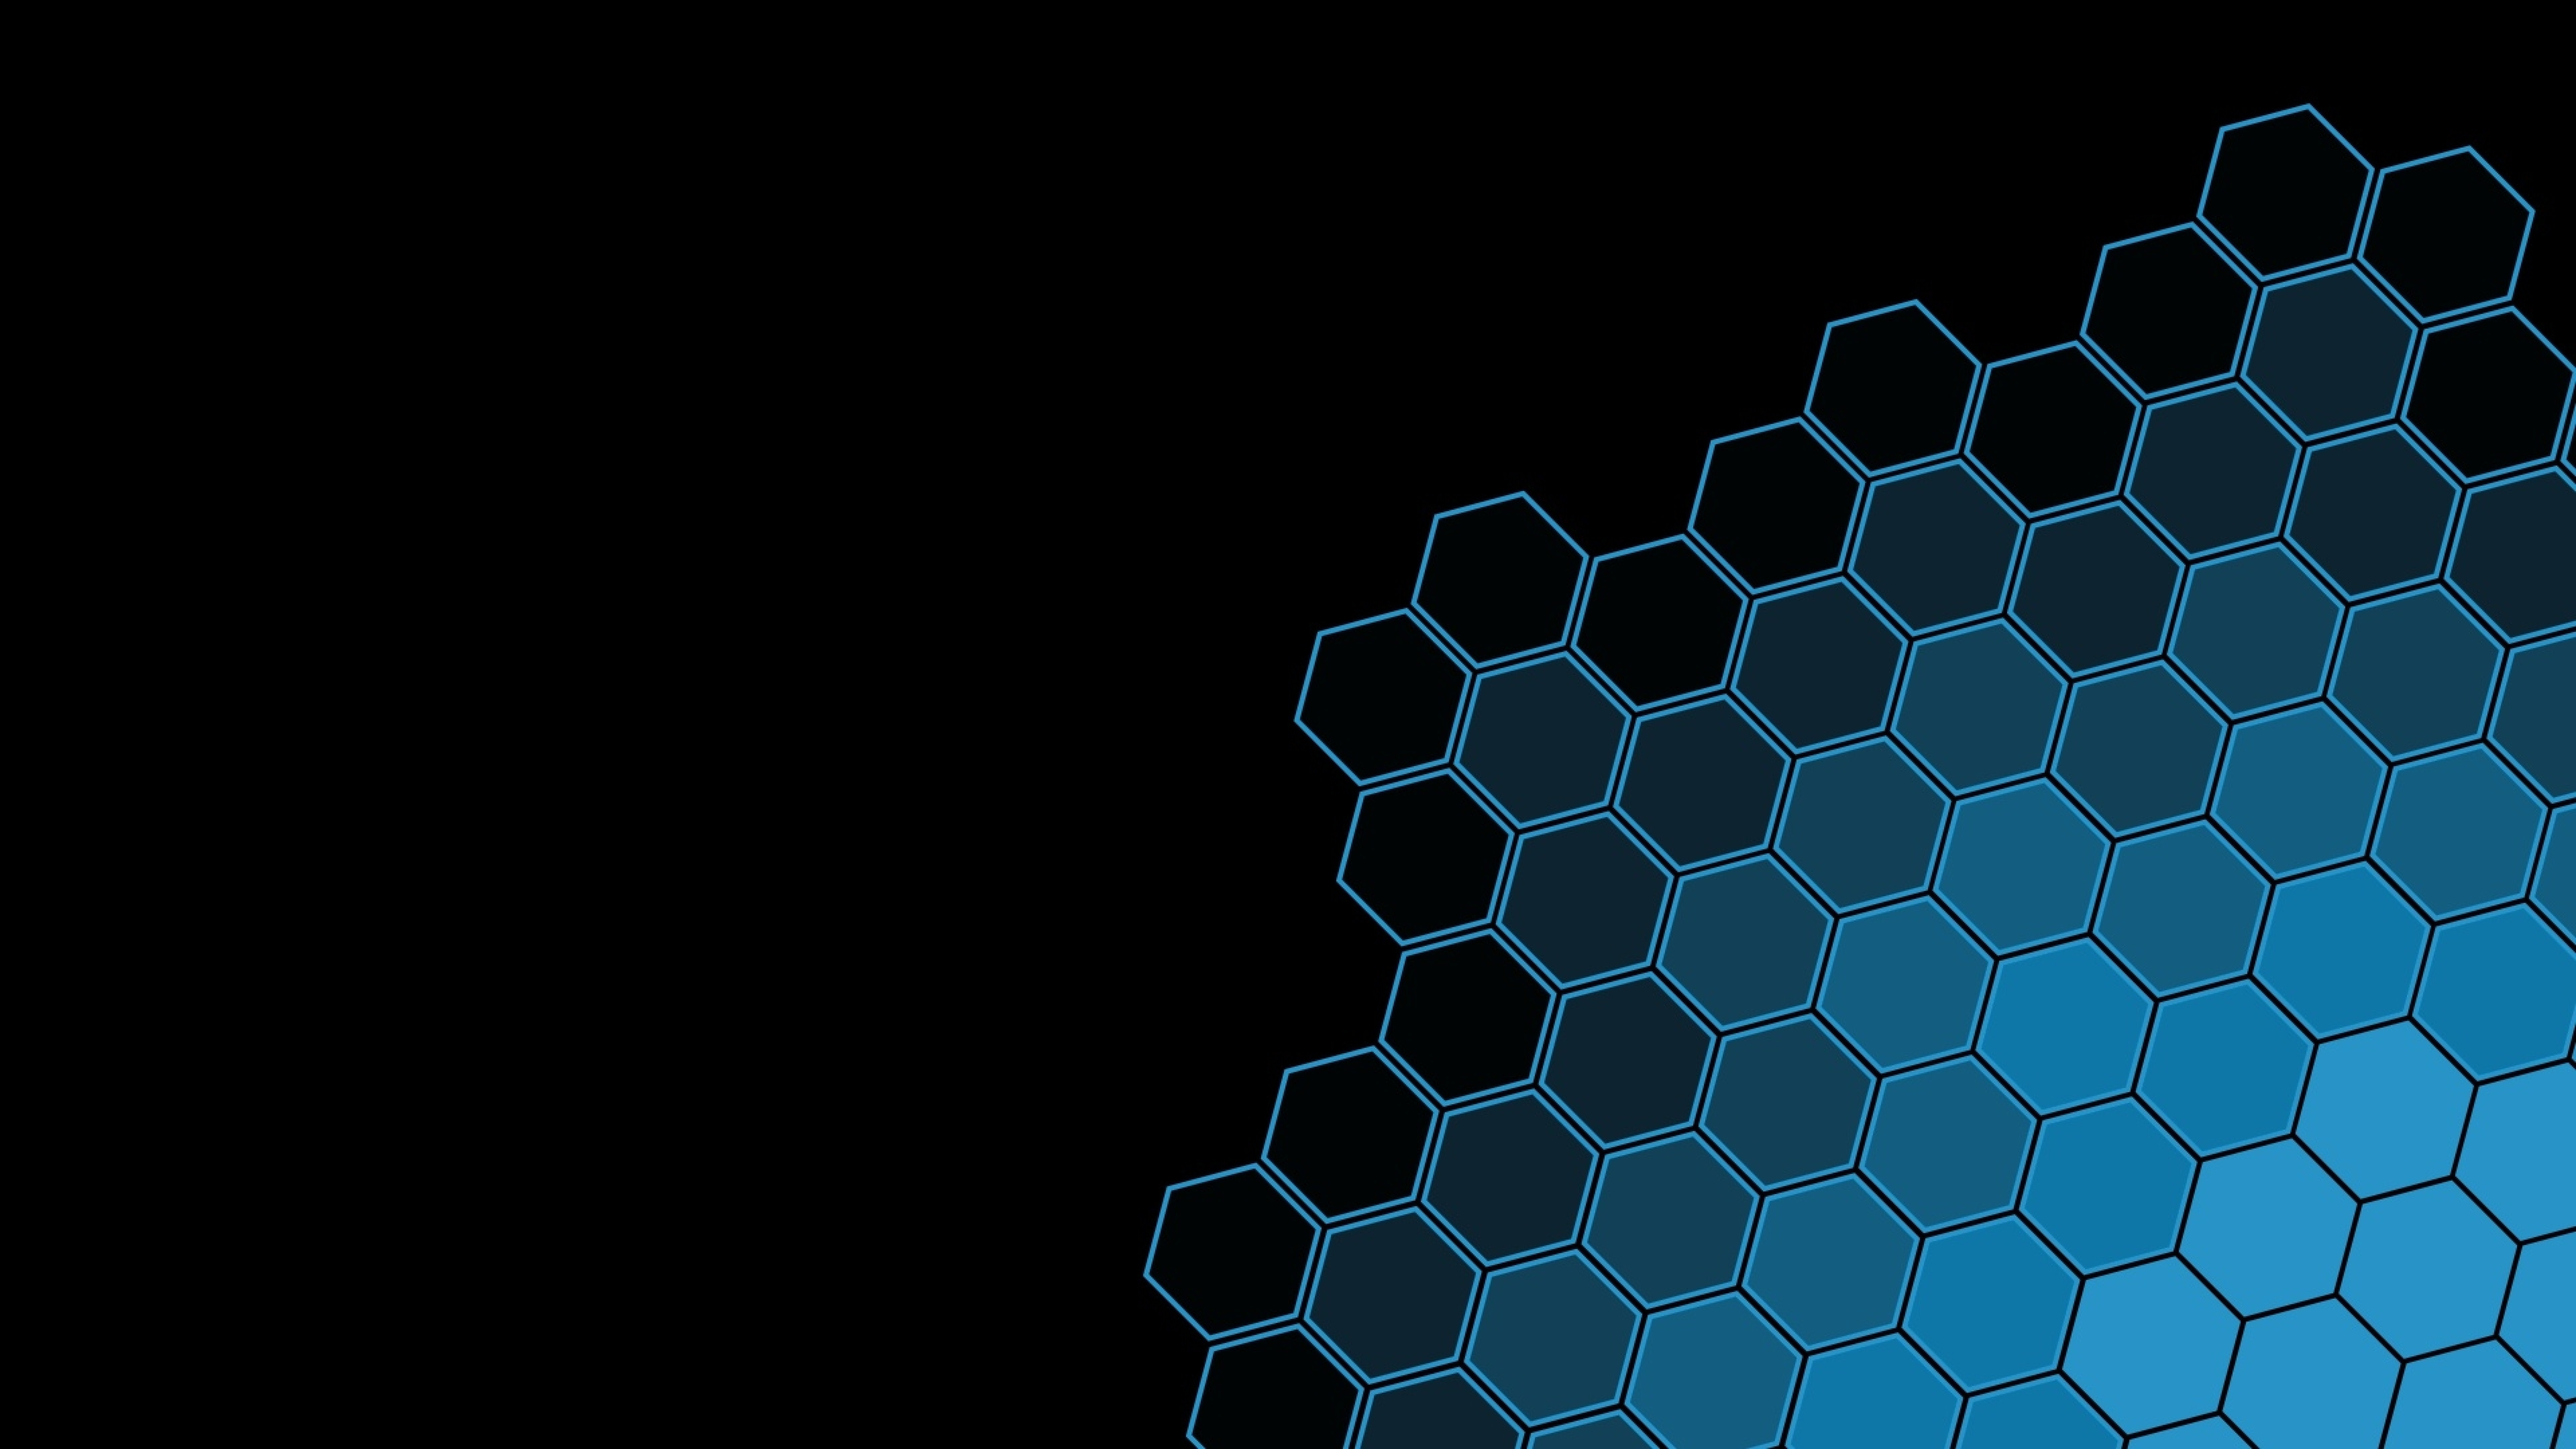 hexagon tech